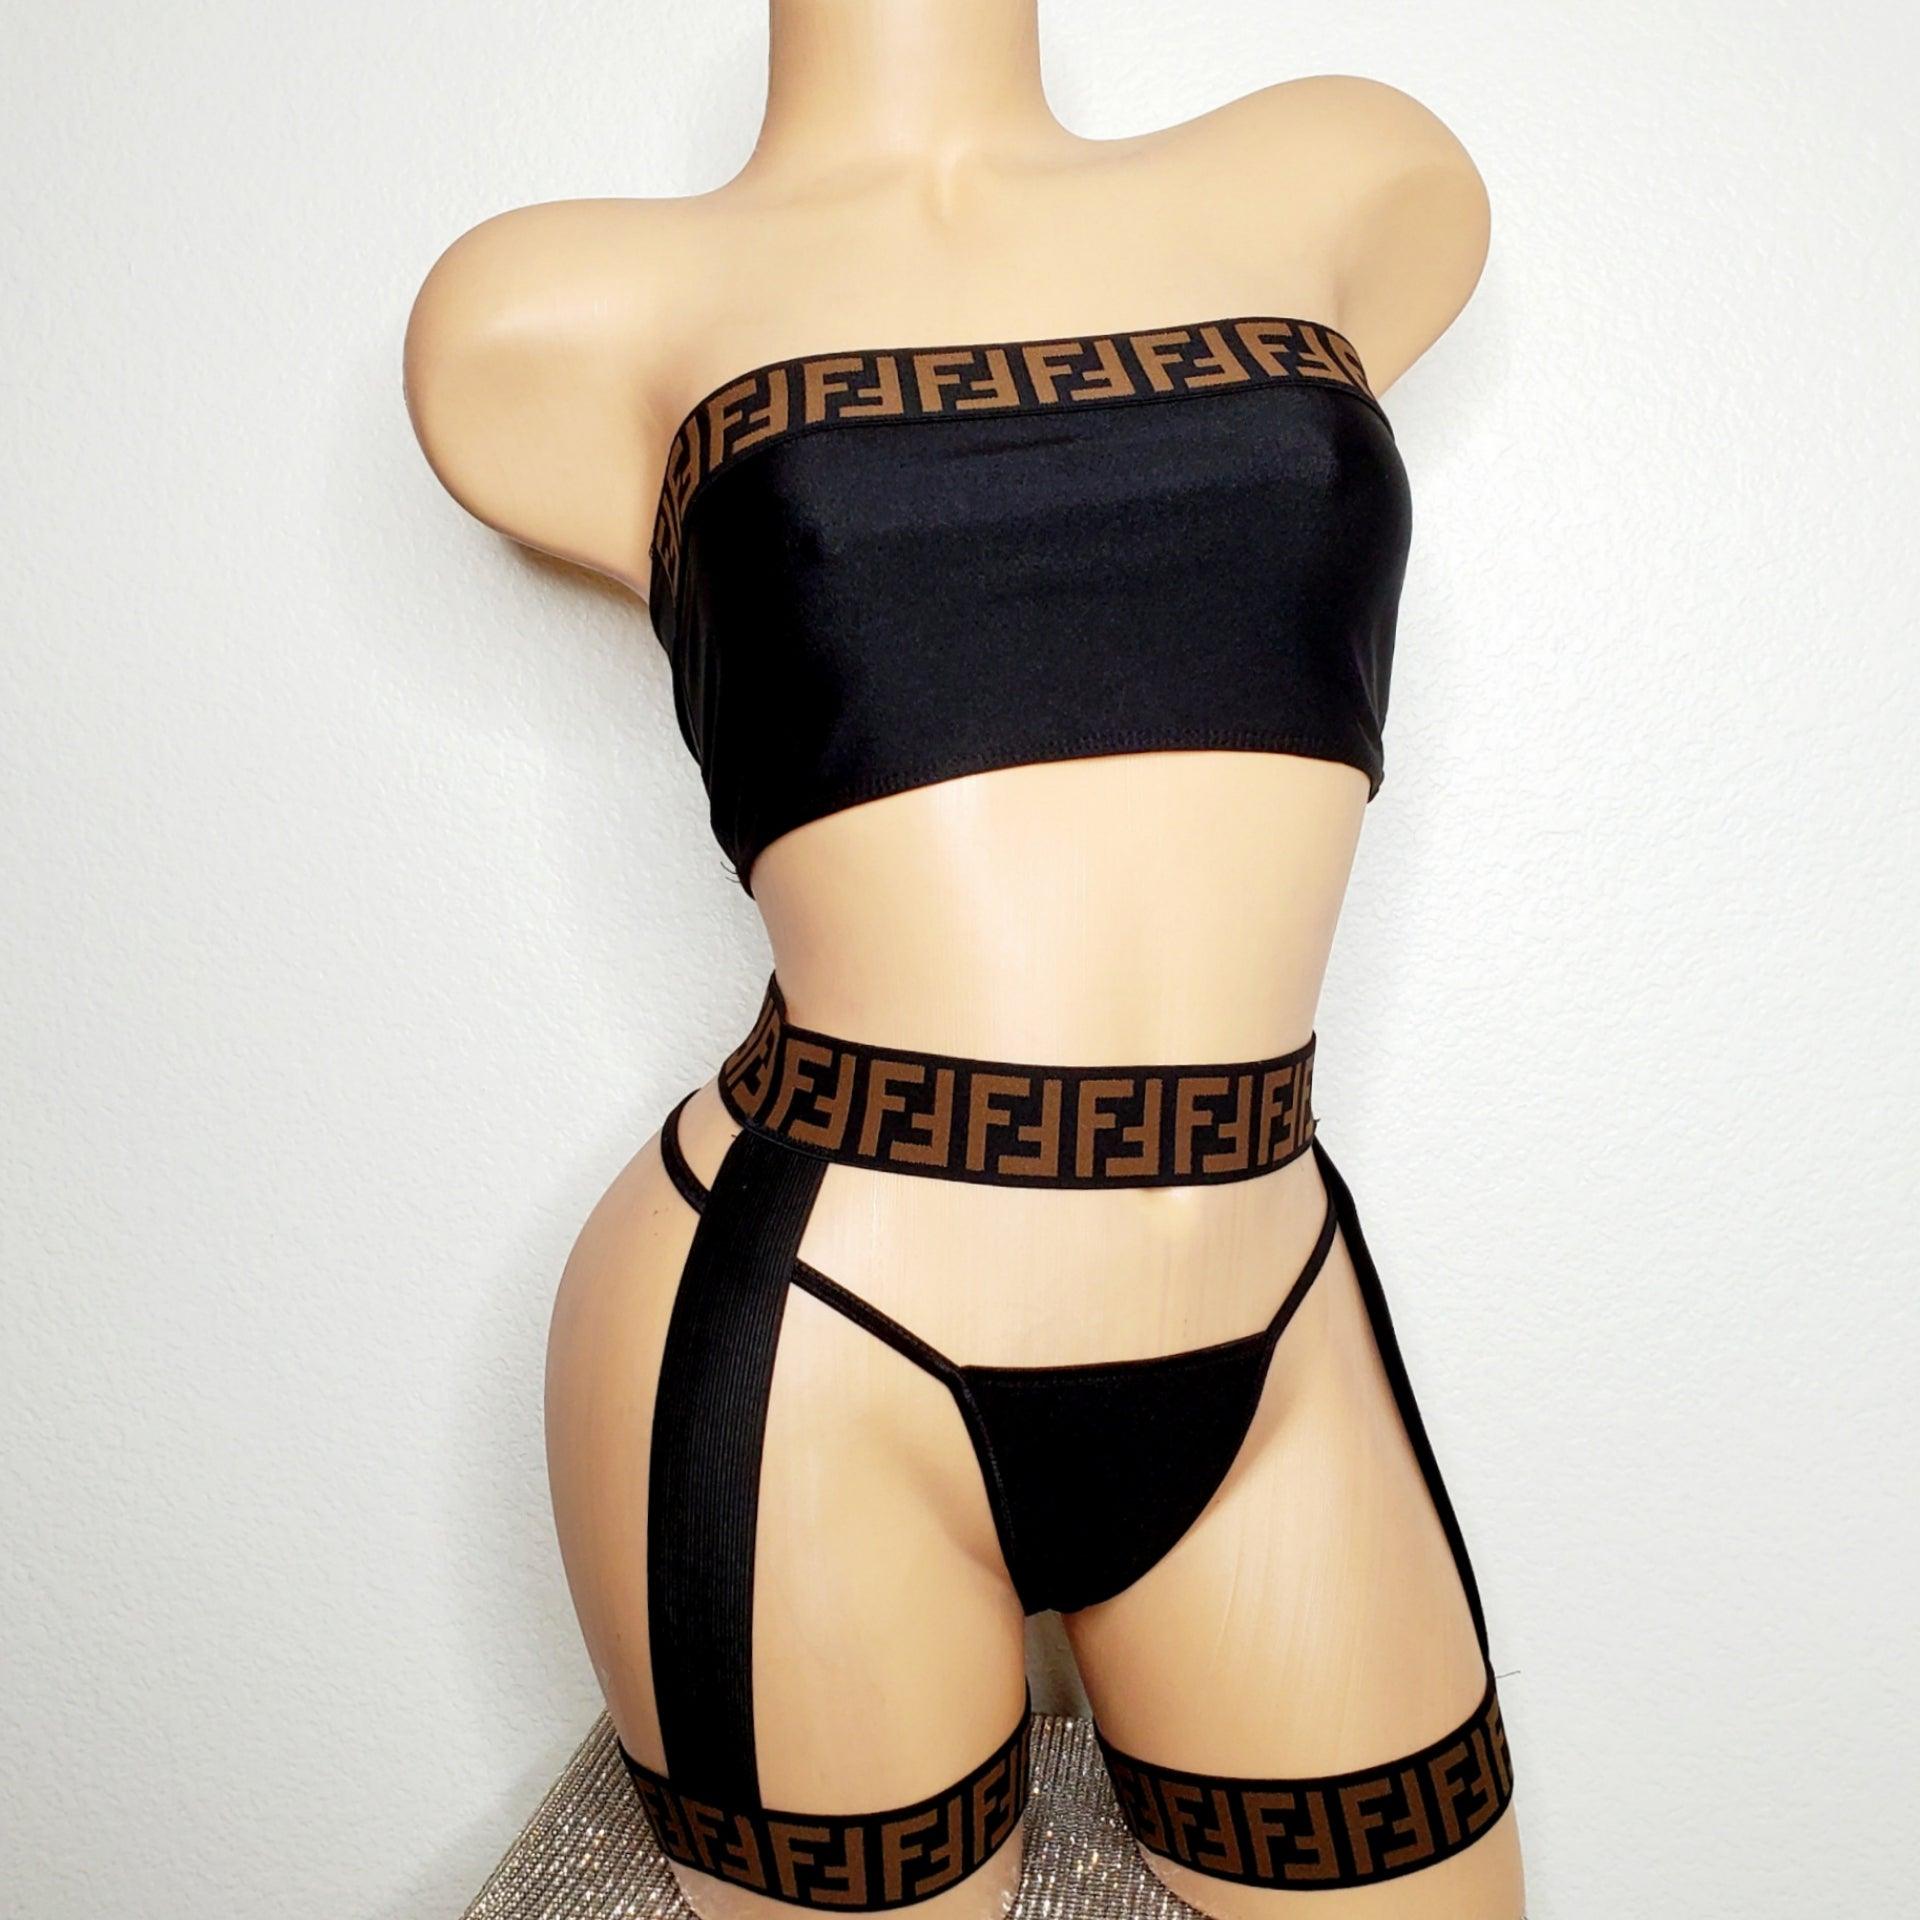 LV Inspired Garter Belt - Exotic Dance Wear